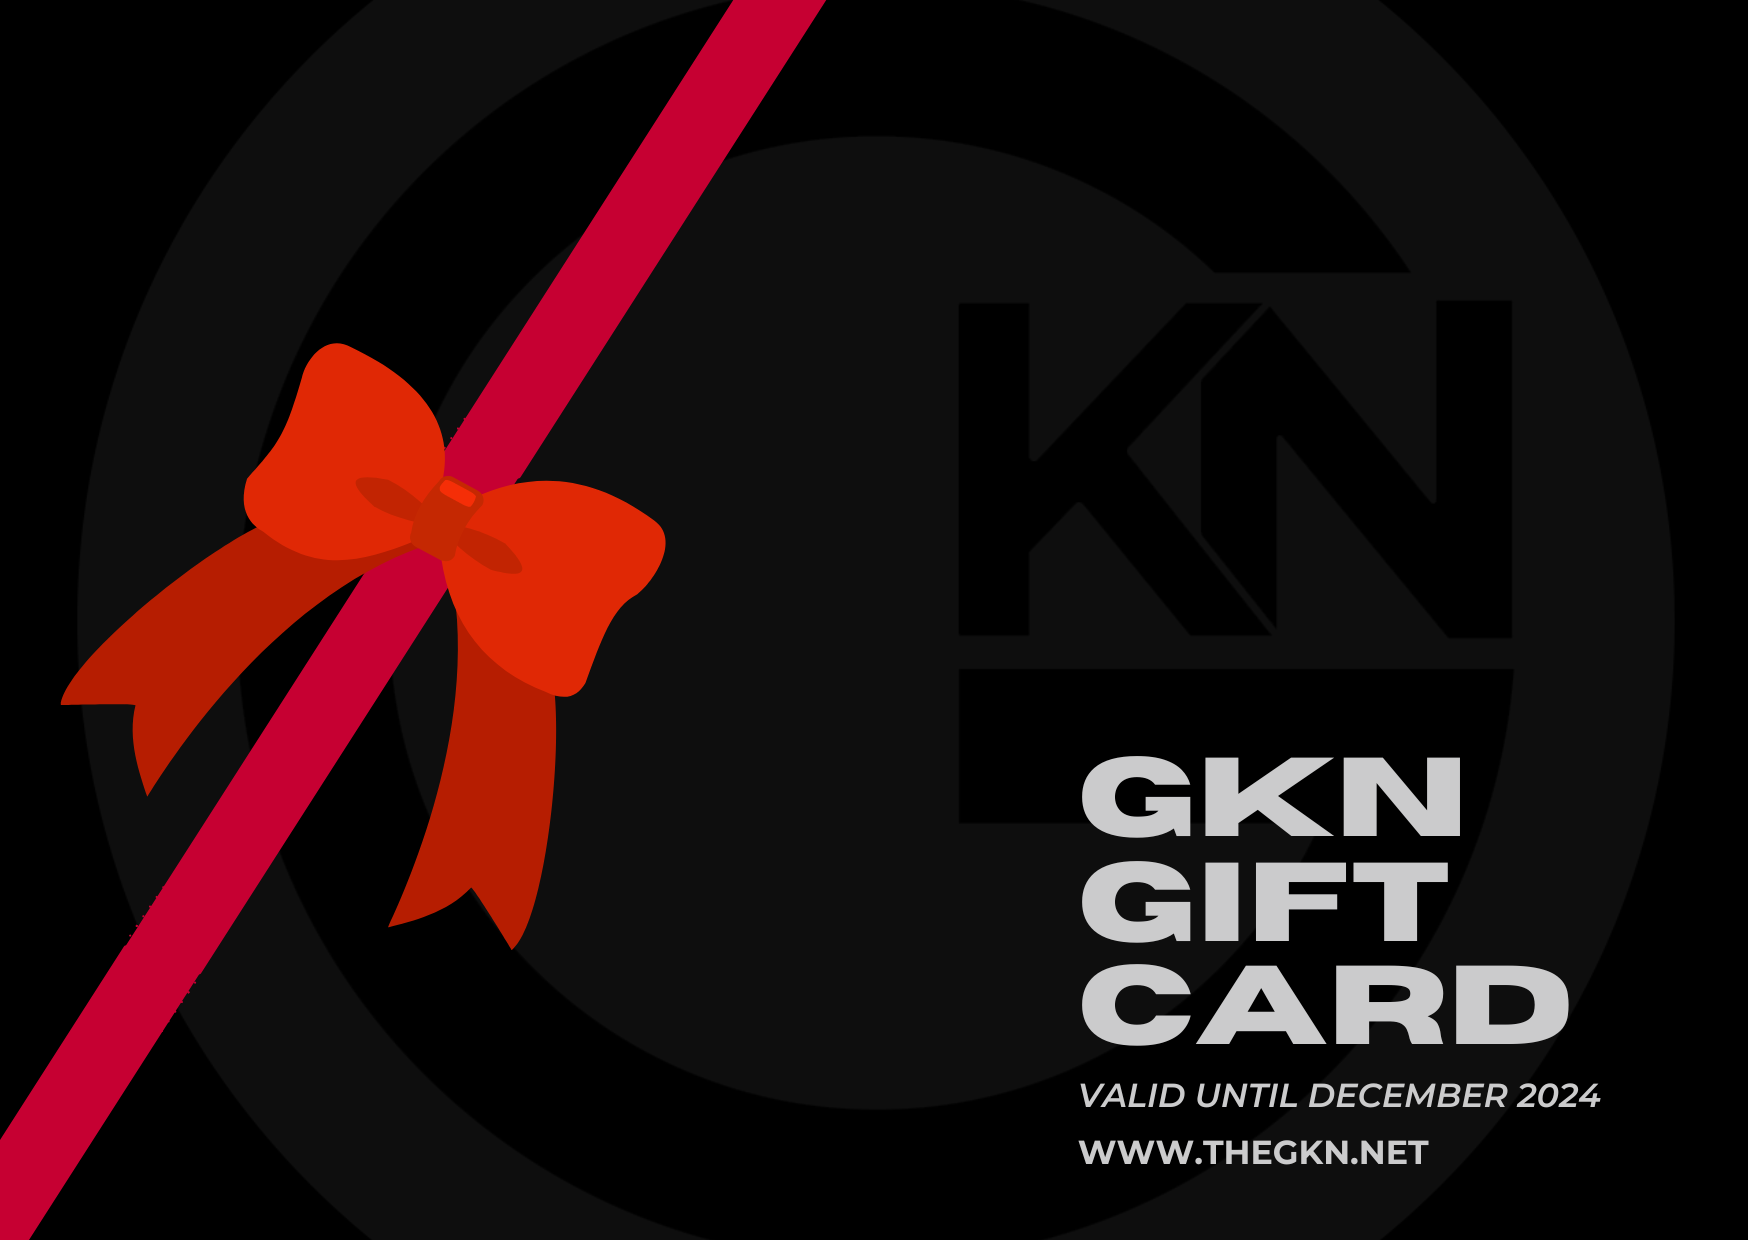 The GKN Gift Card